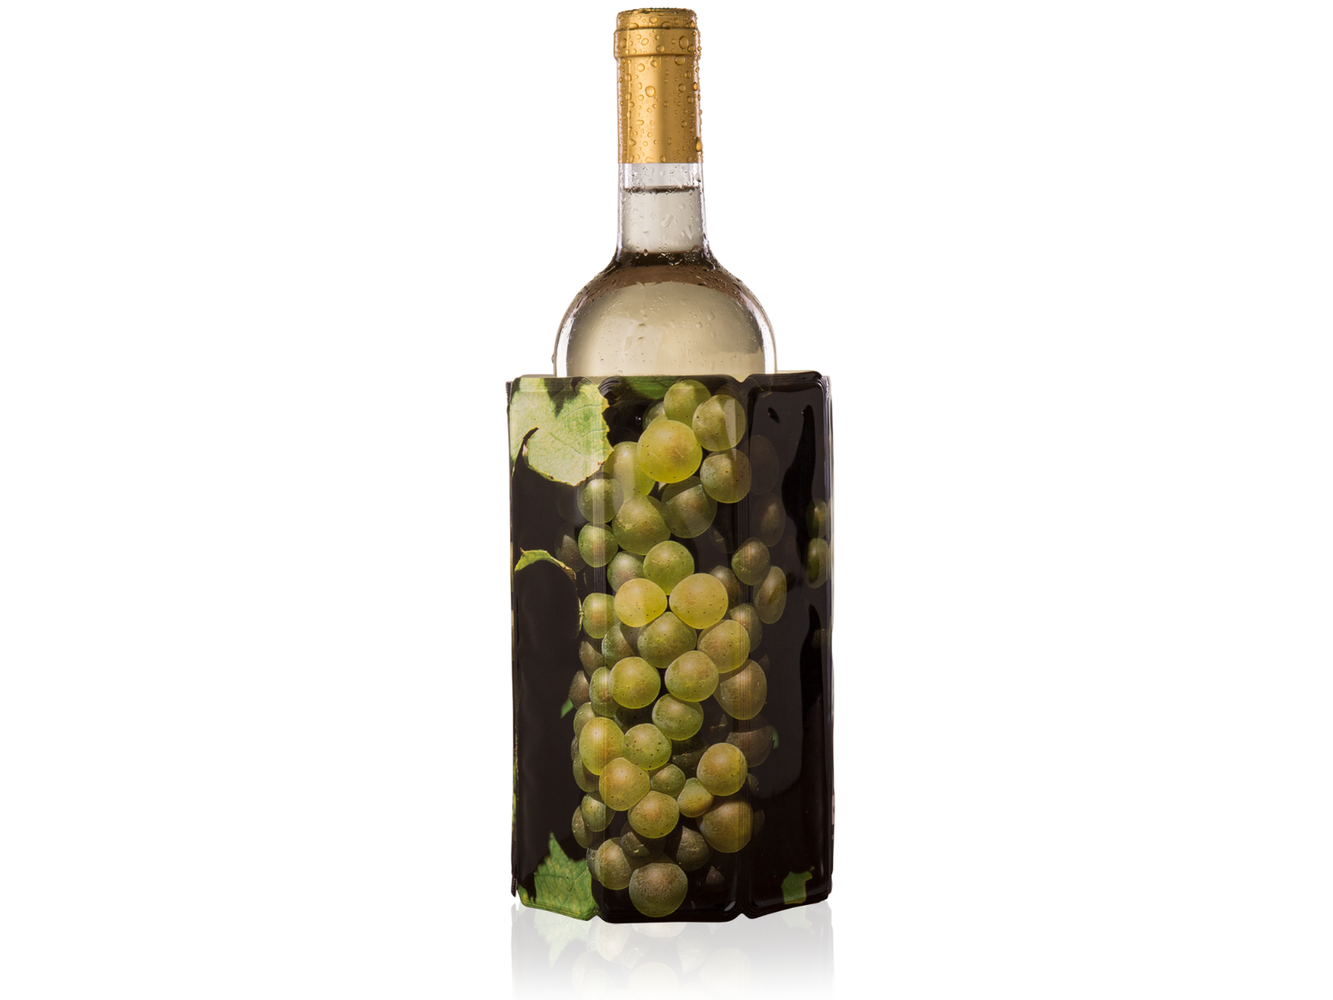 Geit Van storm Boos worden Vacu Vin Active Cooler Wine Grapes, Sleeve kopen? | Cookinglife